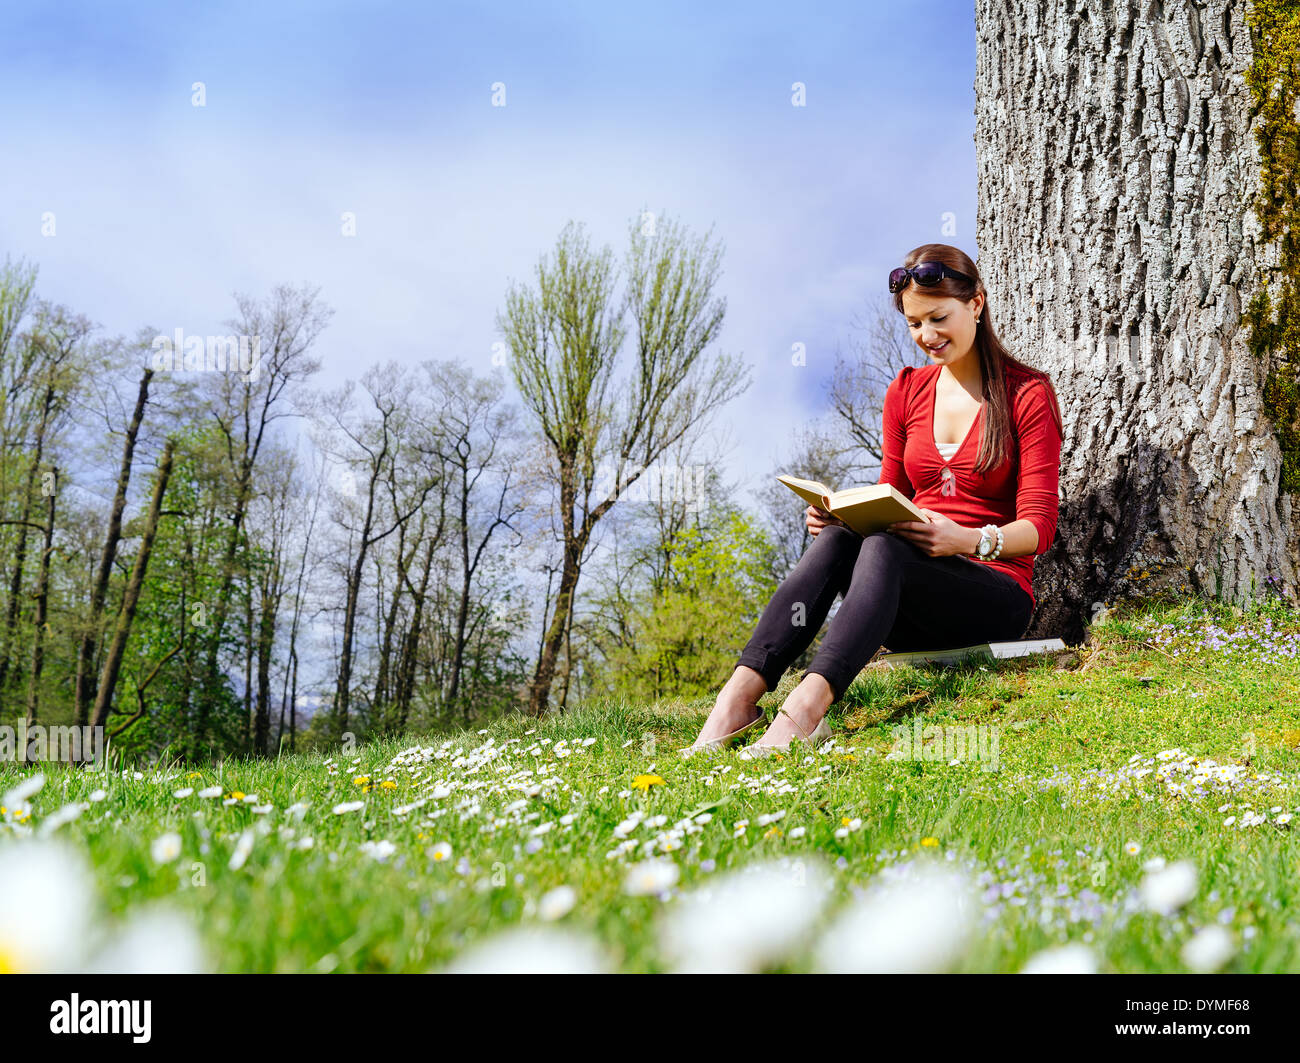 Foto von einer schönen jungen Frau, die einem Buch sitzen gegen einen Baum im zeitigen Frühjahr. Stockfoto